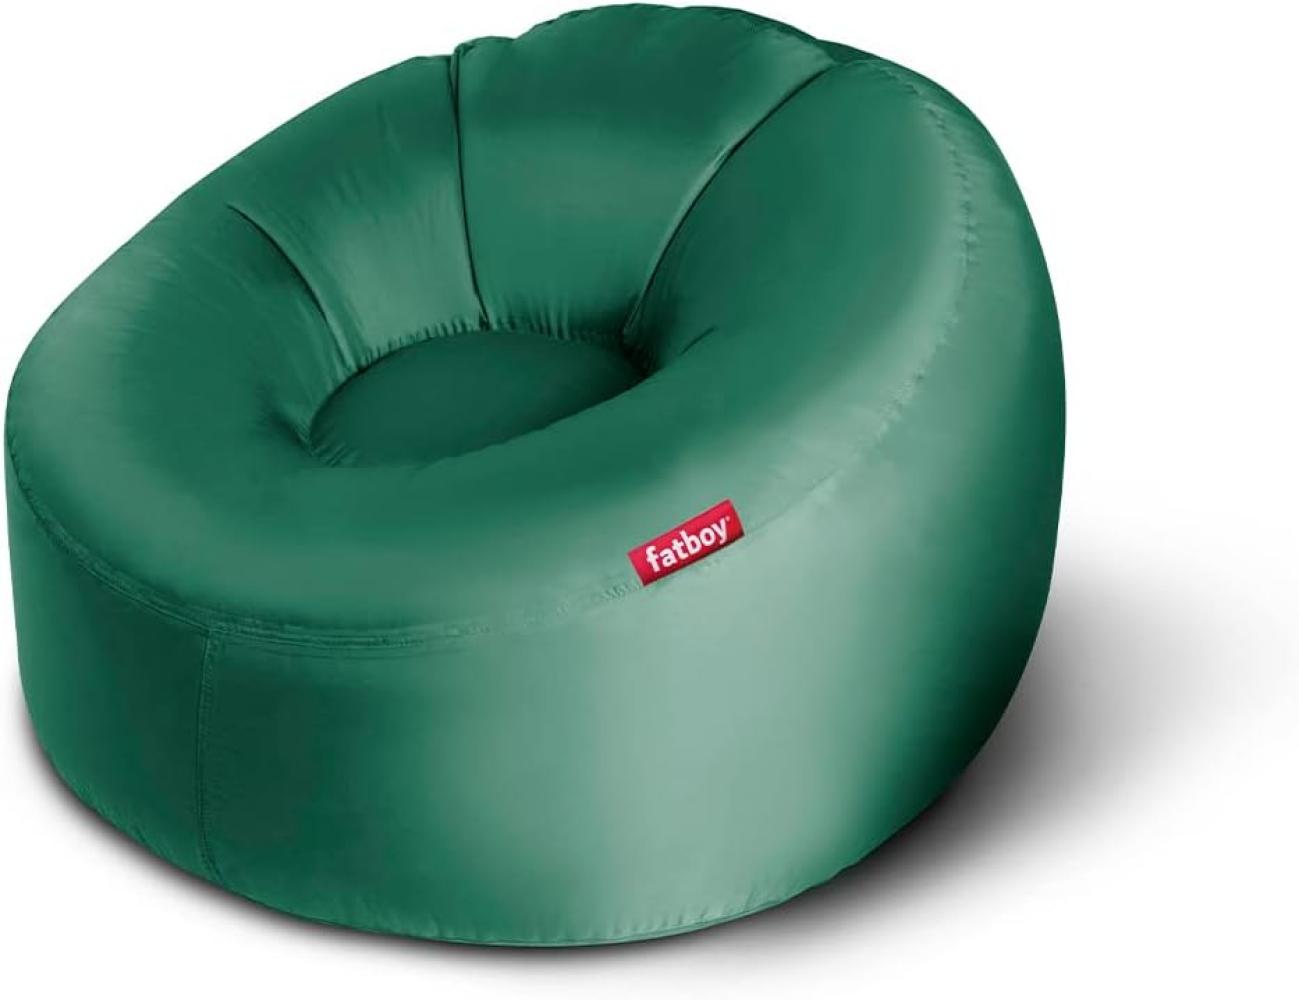 Fatboy® Lamzac 3. 0 Luftsofa | Großes, aufblasbares Sofa/Liege/Bett in Dschungelgrün, Sitzsack mit Luft gefüllt | Outdoor geeignet | 110 x 103 x 62 cm Bild 1